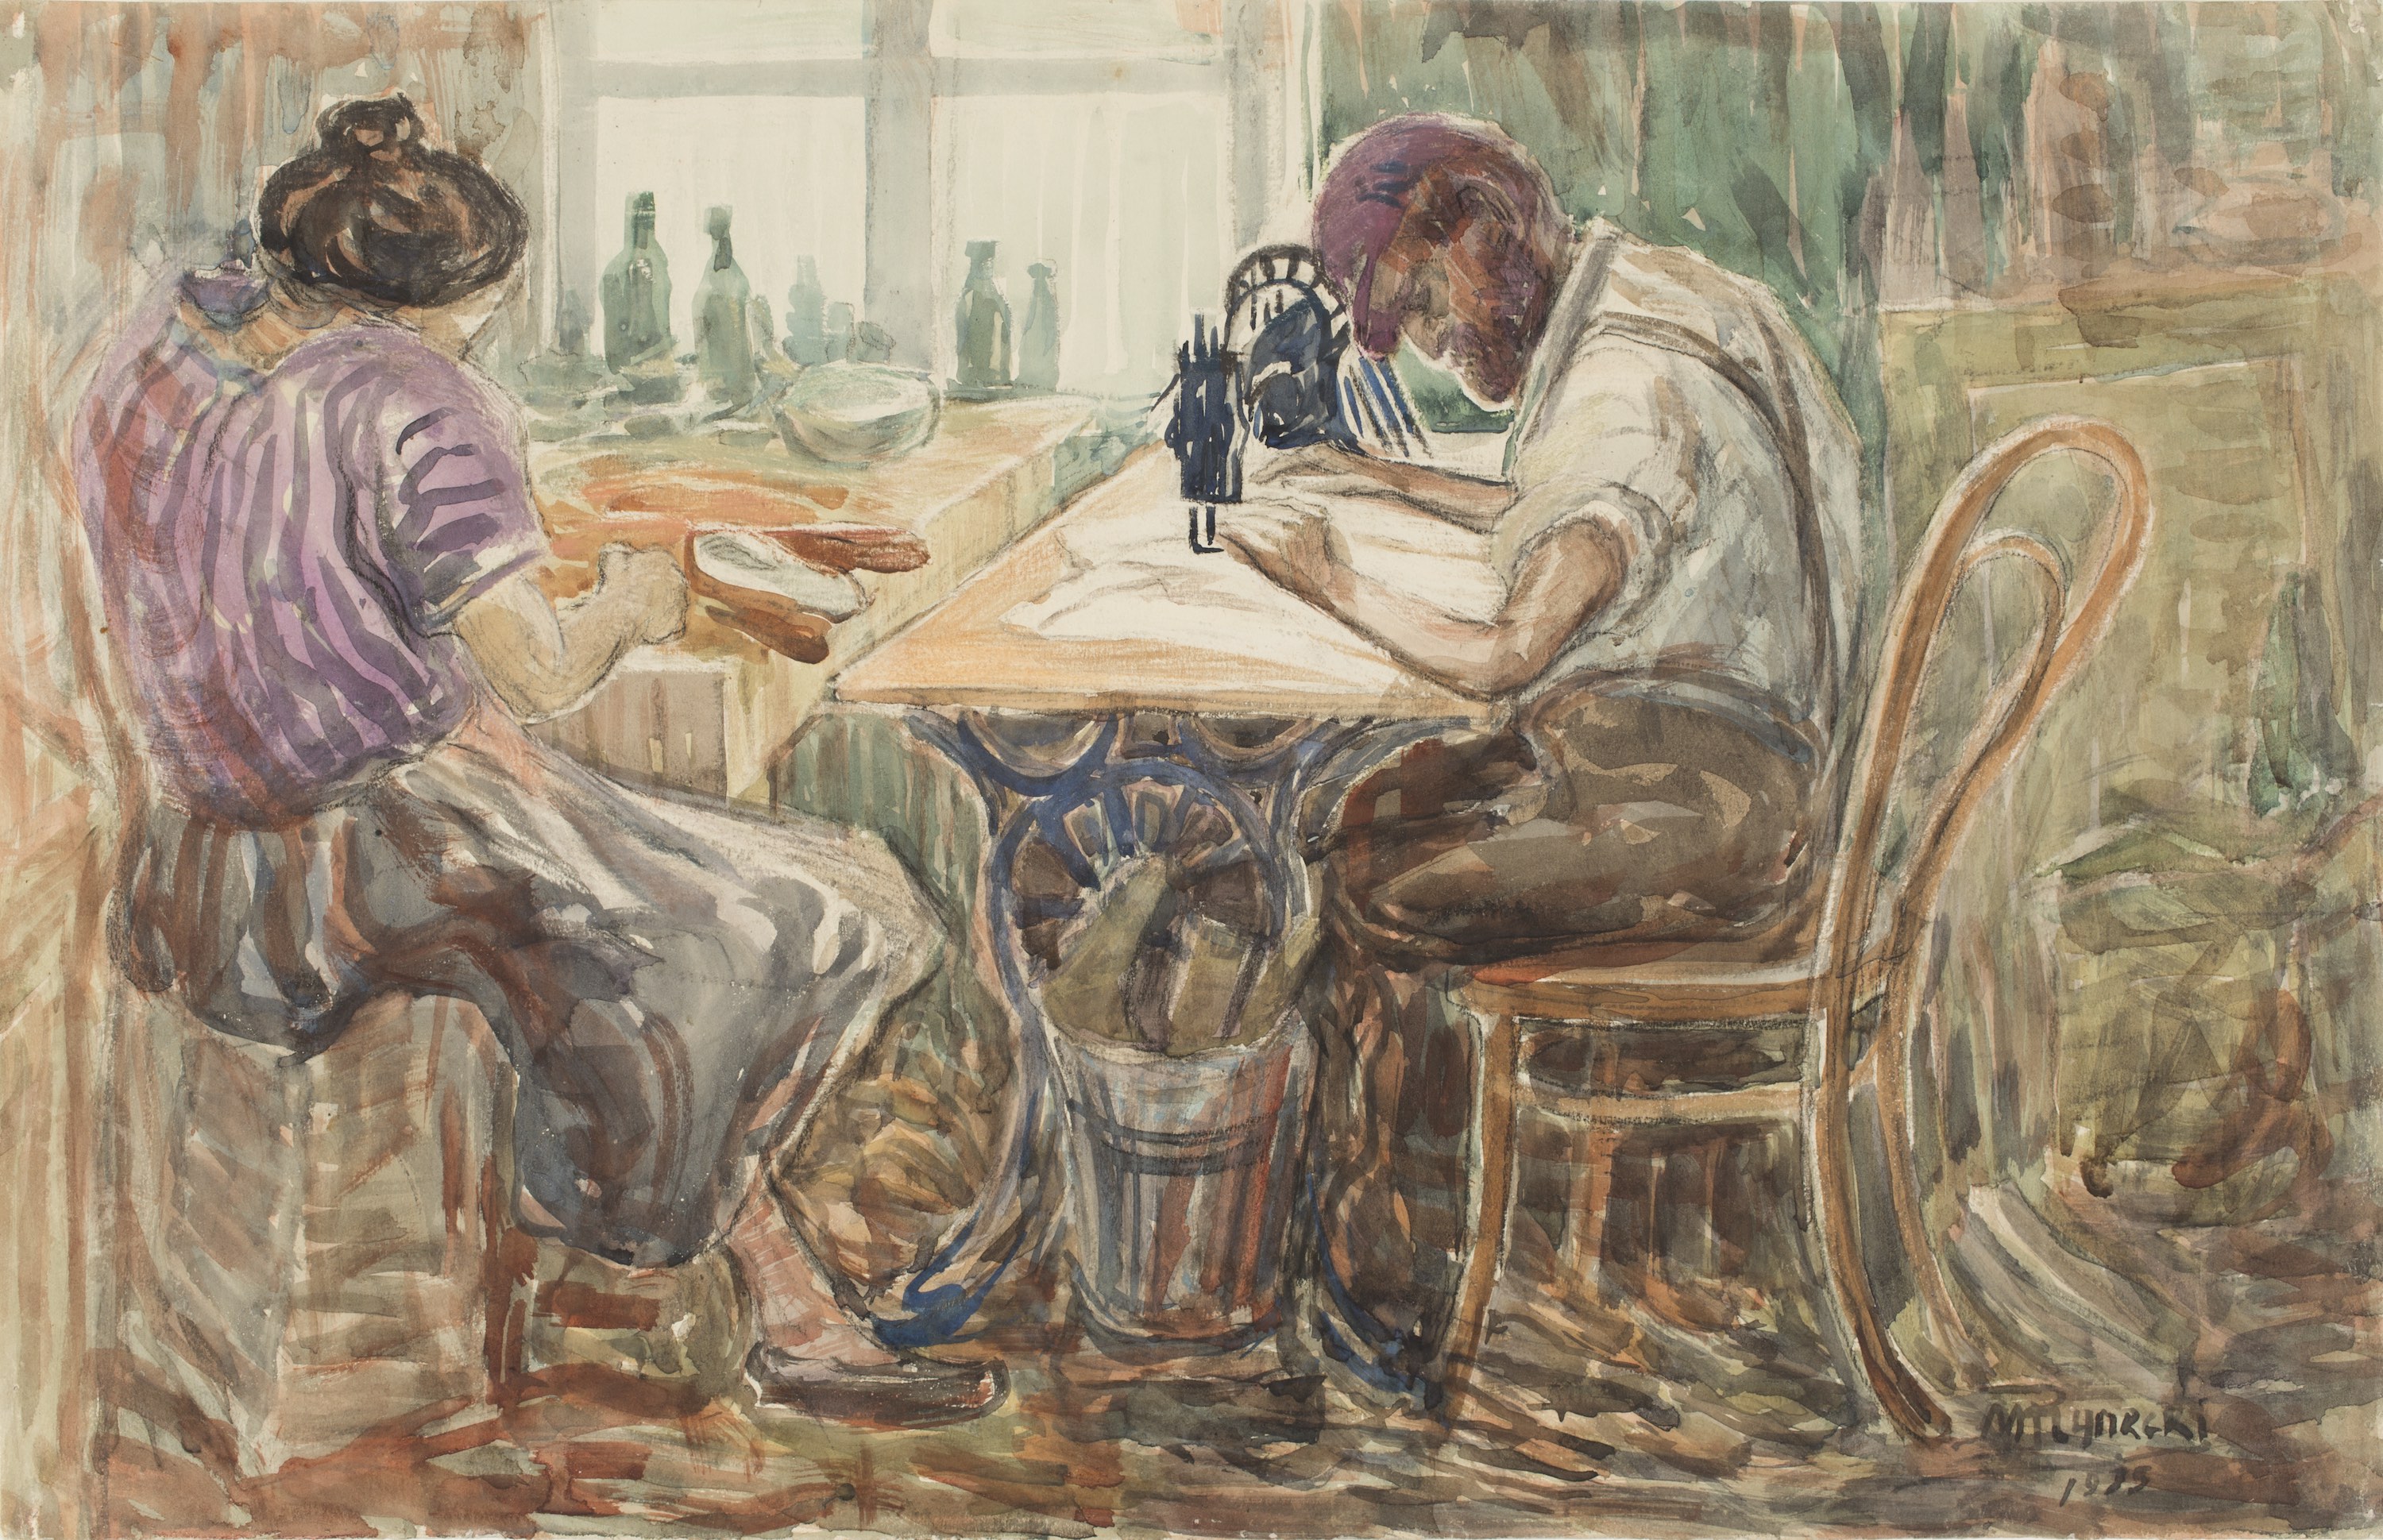 工作中的裁縫 by Mojżesz Rynecki - 1935 - 32.5 x 50.5 cm 